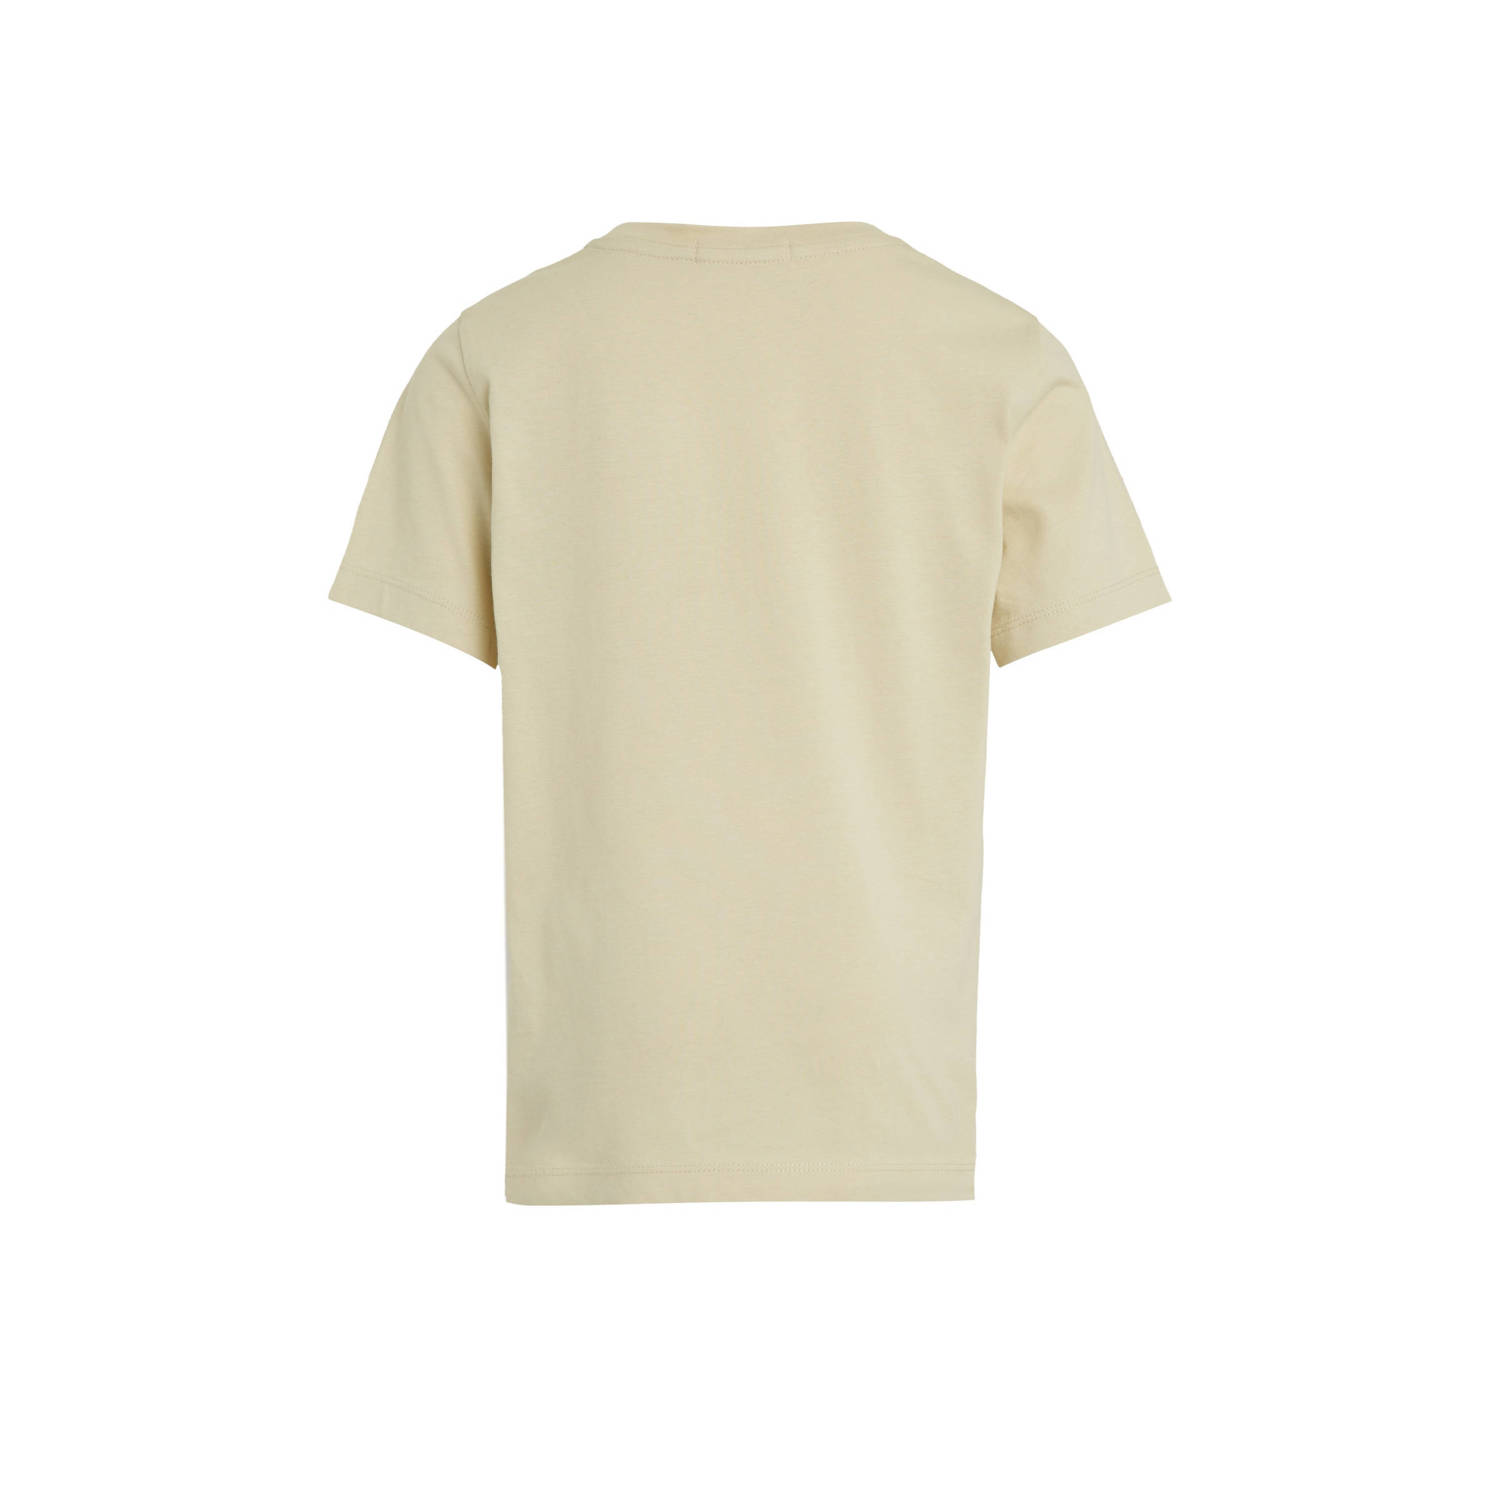 Calvin Klein T-shirt beige